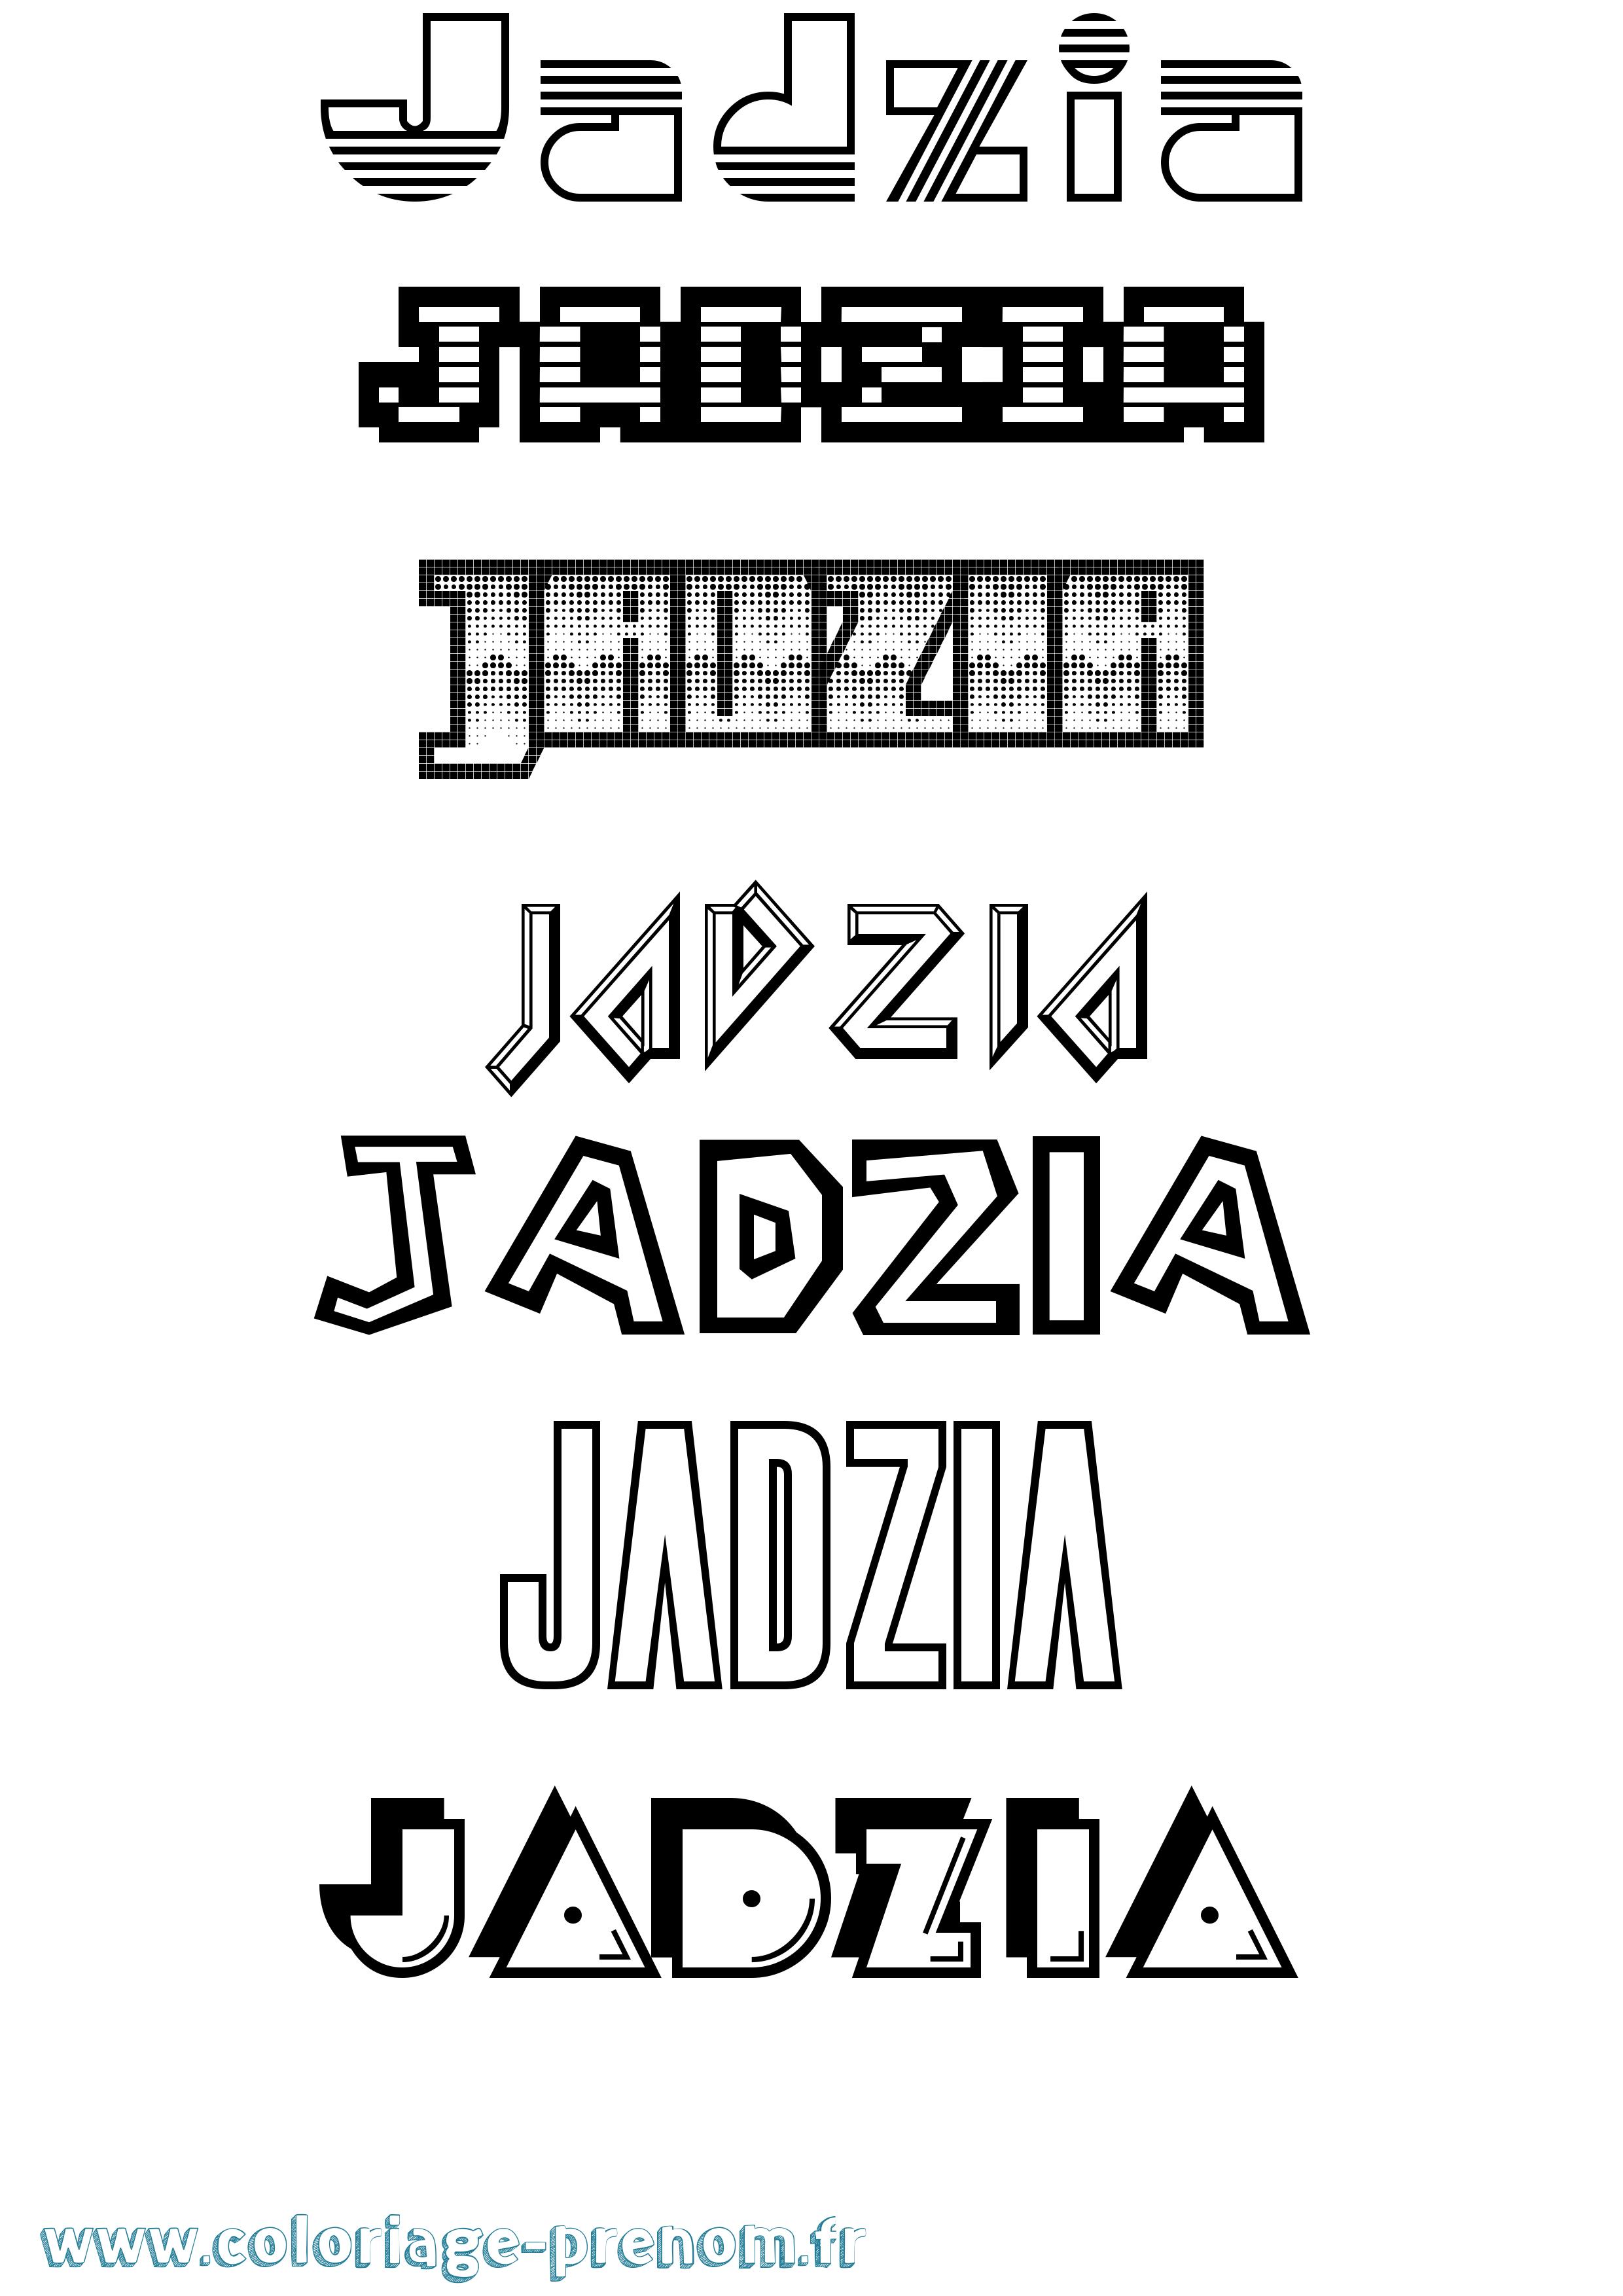 Coloriage prénom Jadzia Jeux Vidéos